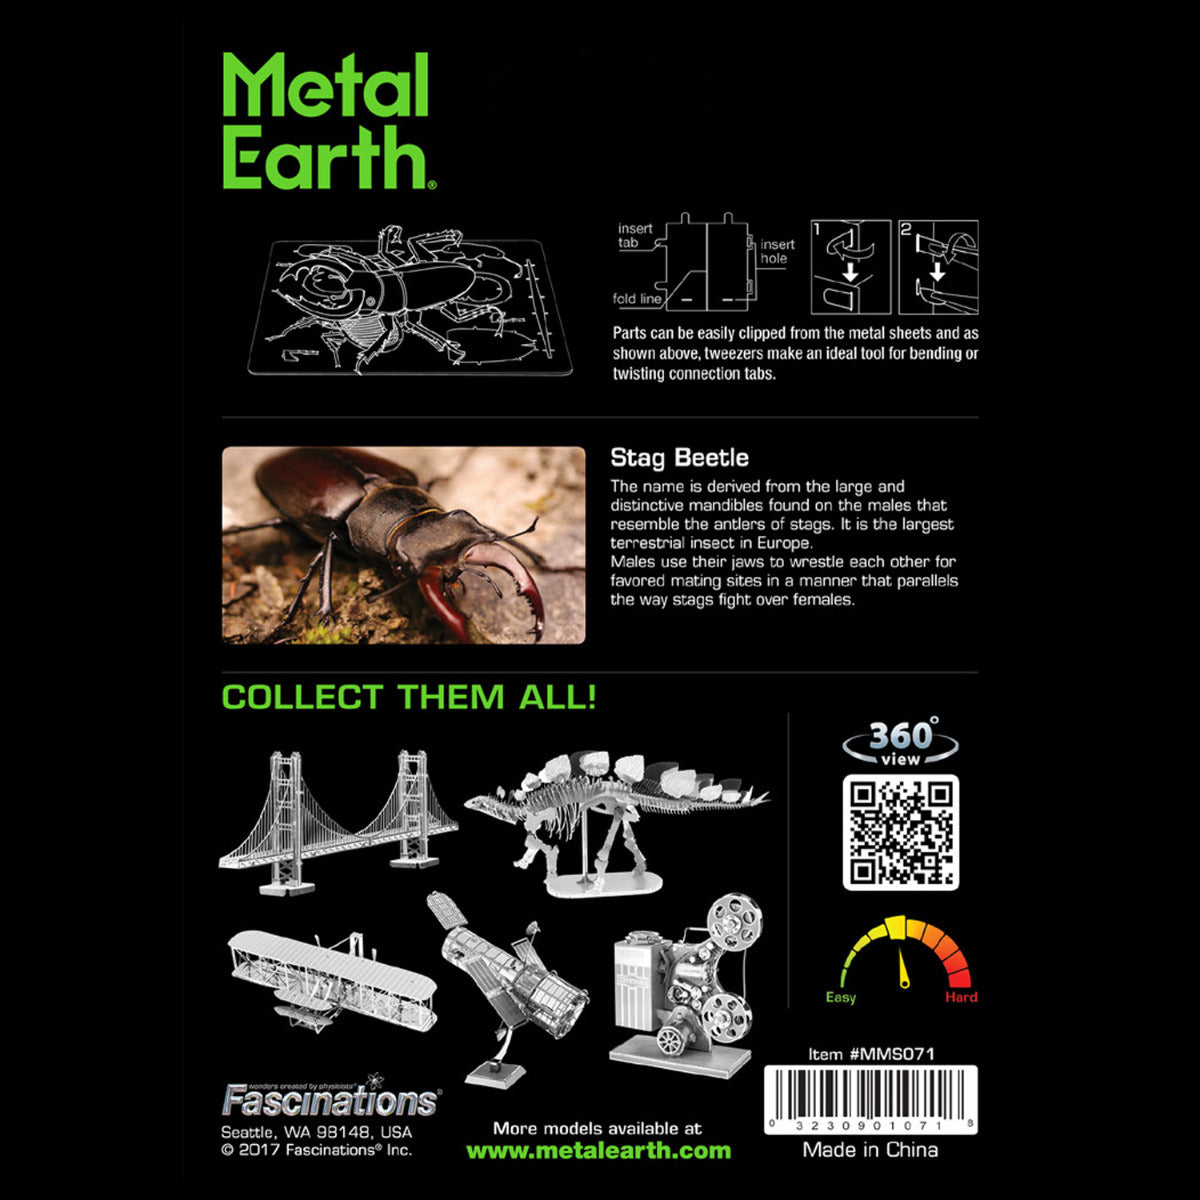 Metal Earth Metallbausätze MMS071 Stag Beetle Hirschkäfer Metall Modell